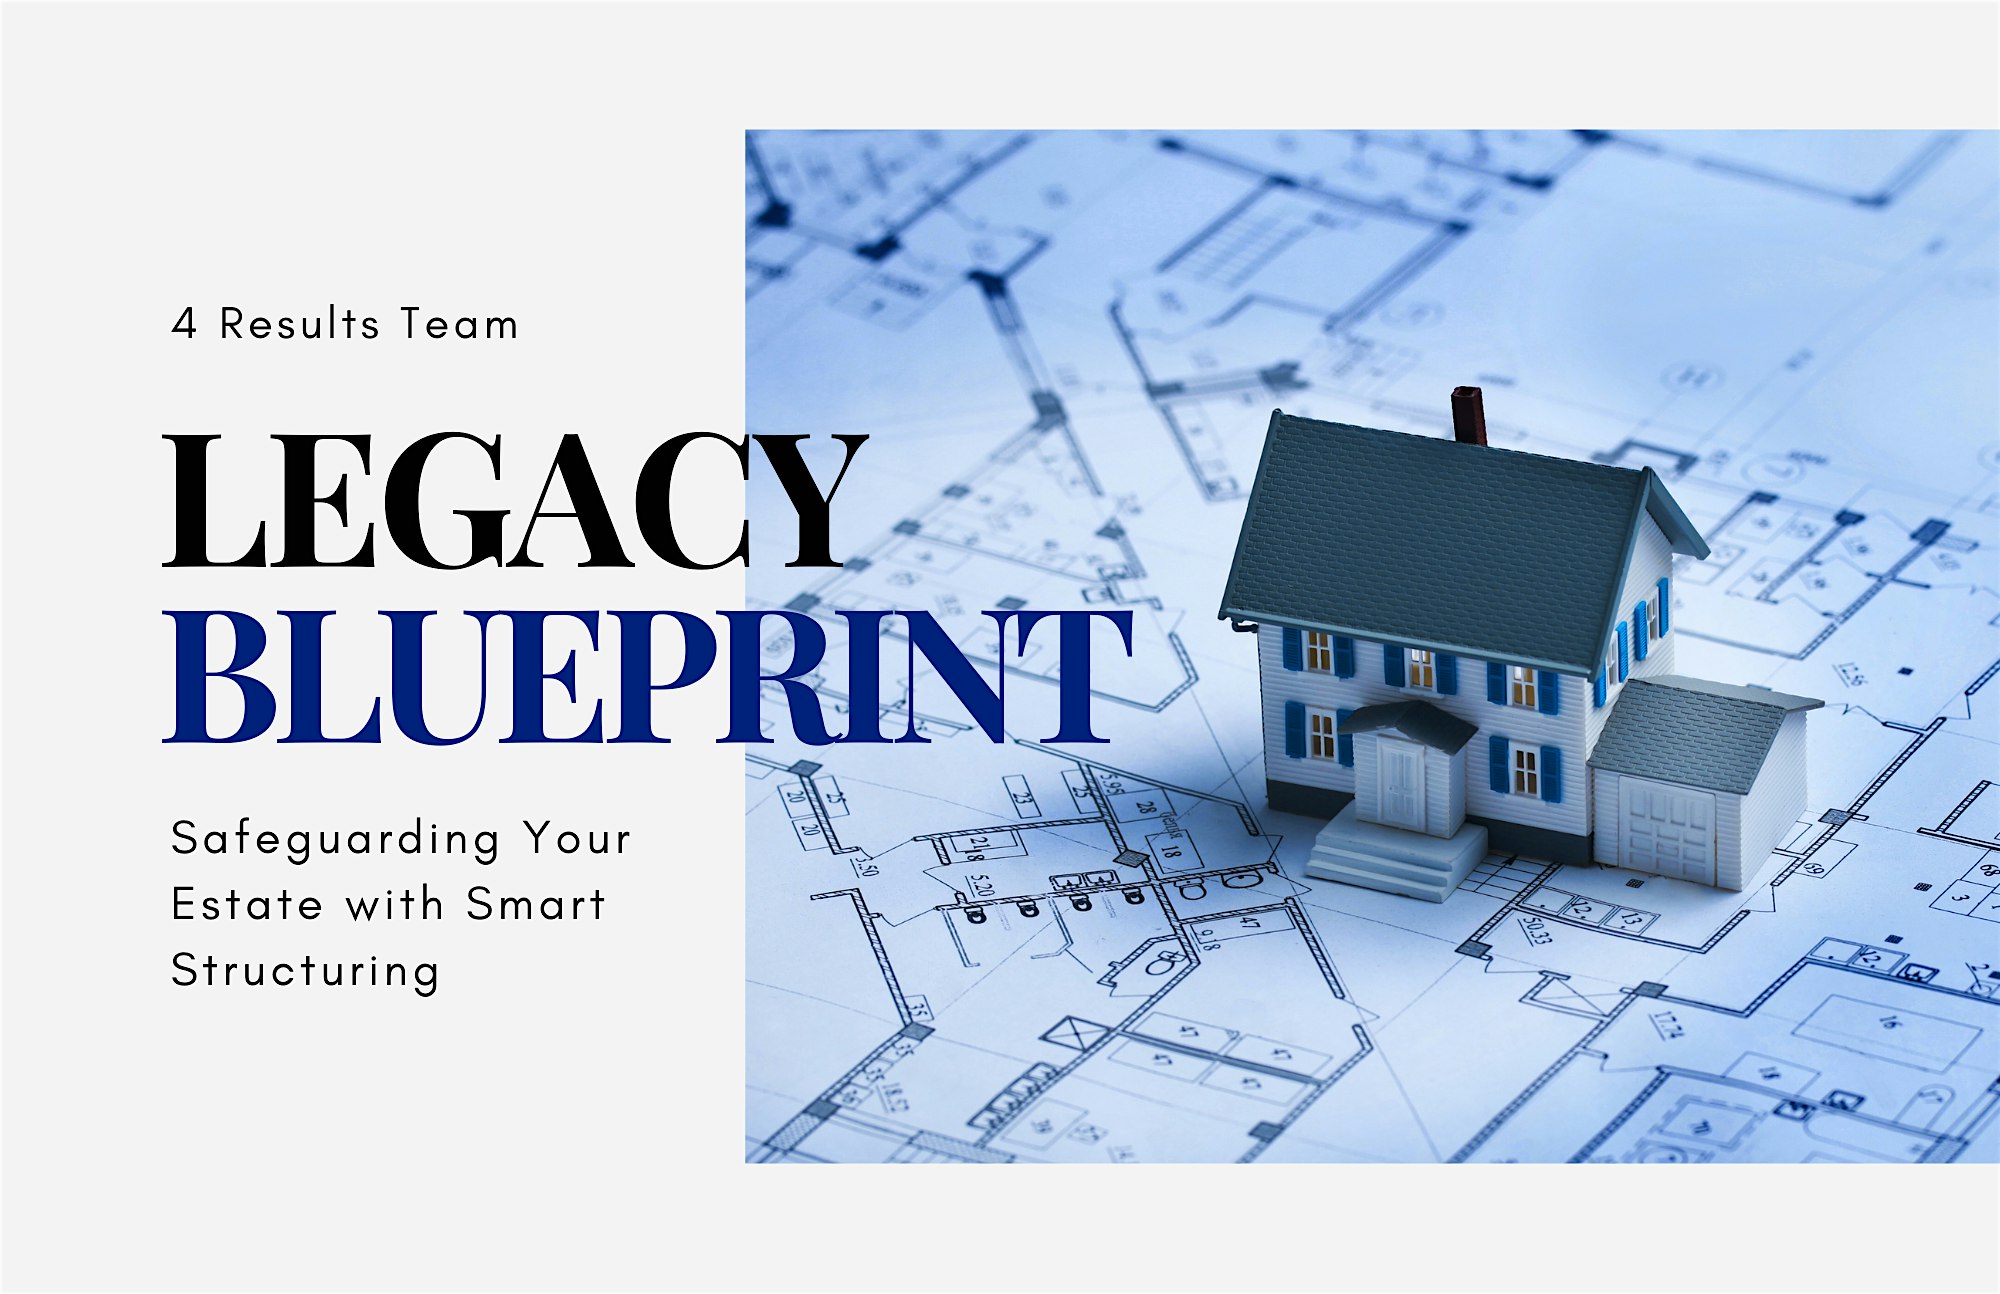 Legacy Blueprint